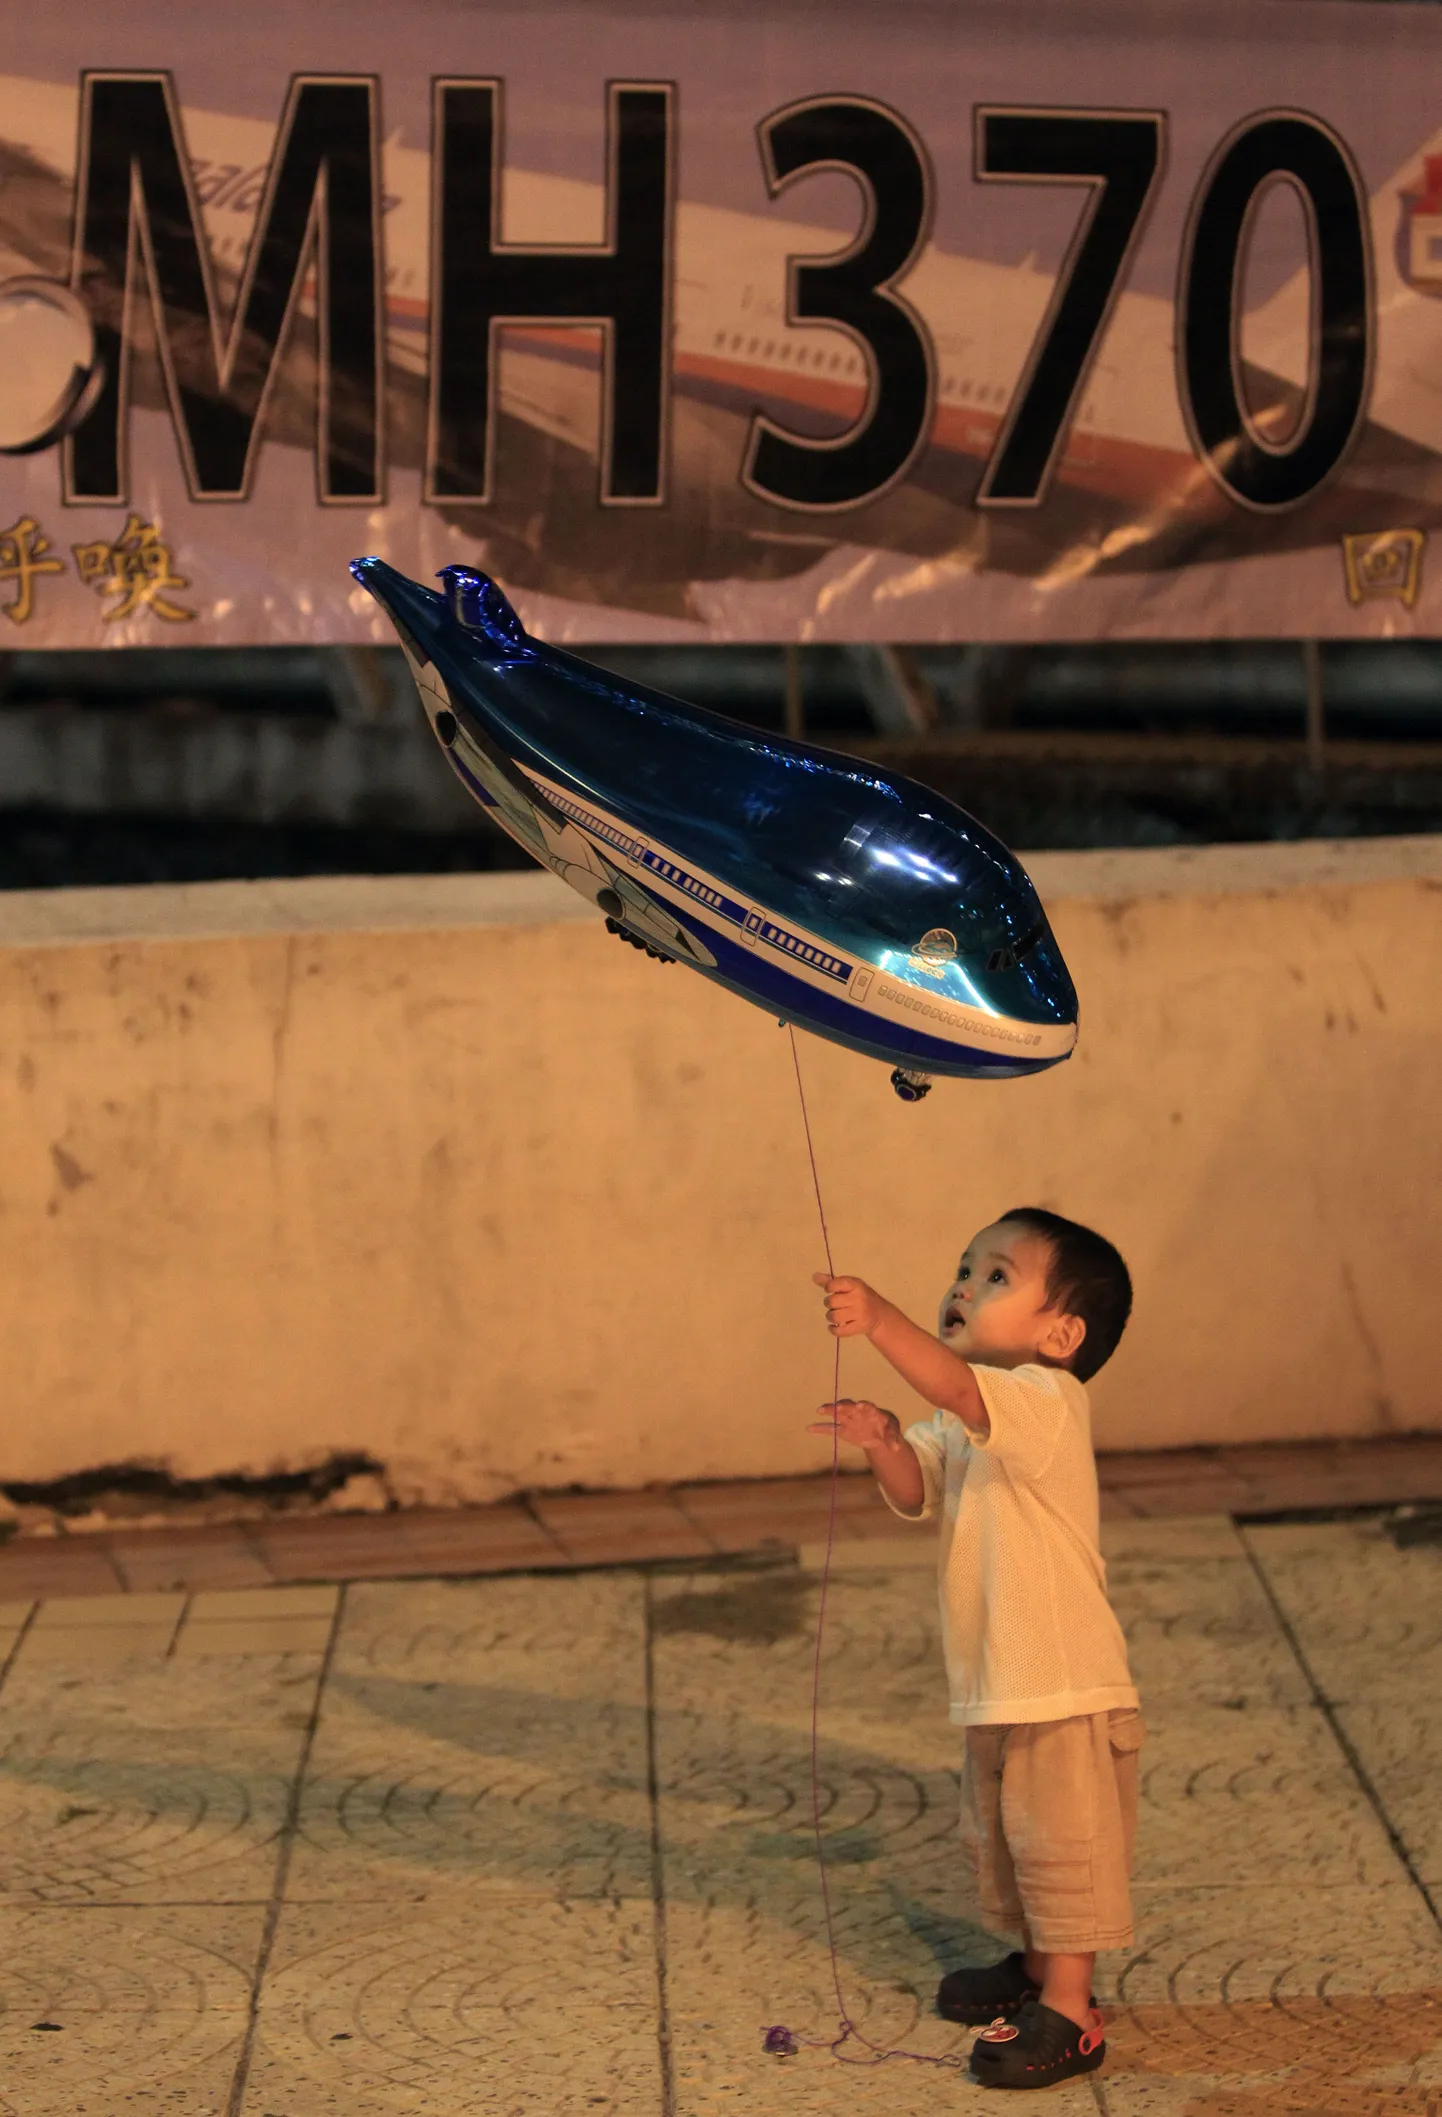 CNN:Malaisia kadunud lennuk võis meelega vältida Indoneesia õhuruumi. Pildil poiss mängimas lennu MH370 mälestusüritusel lennuki kujulise õhupalliga